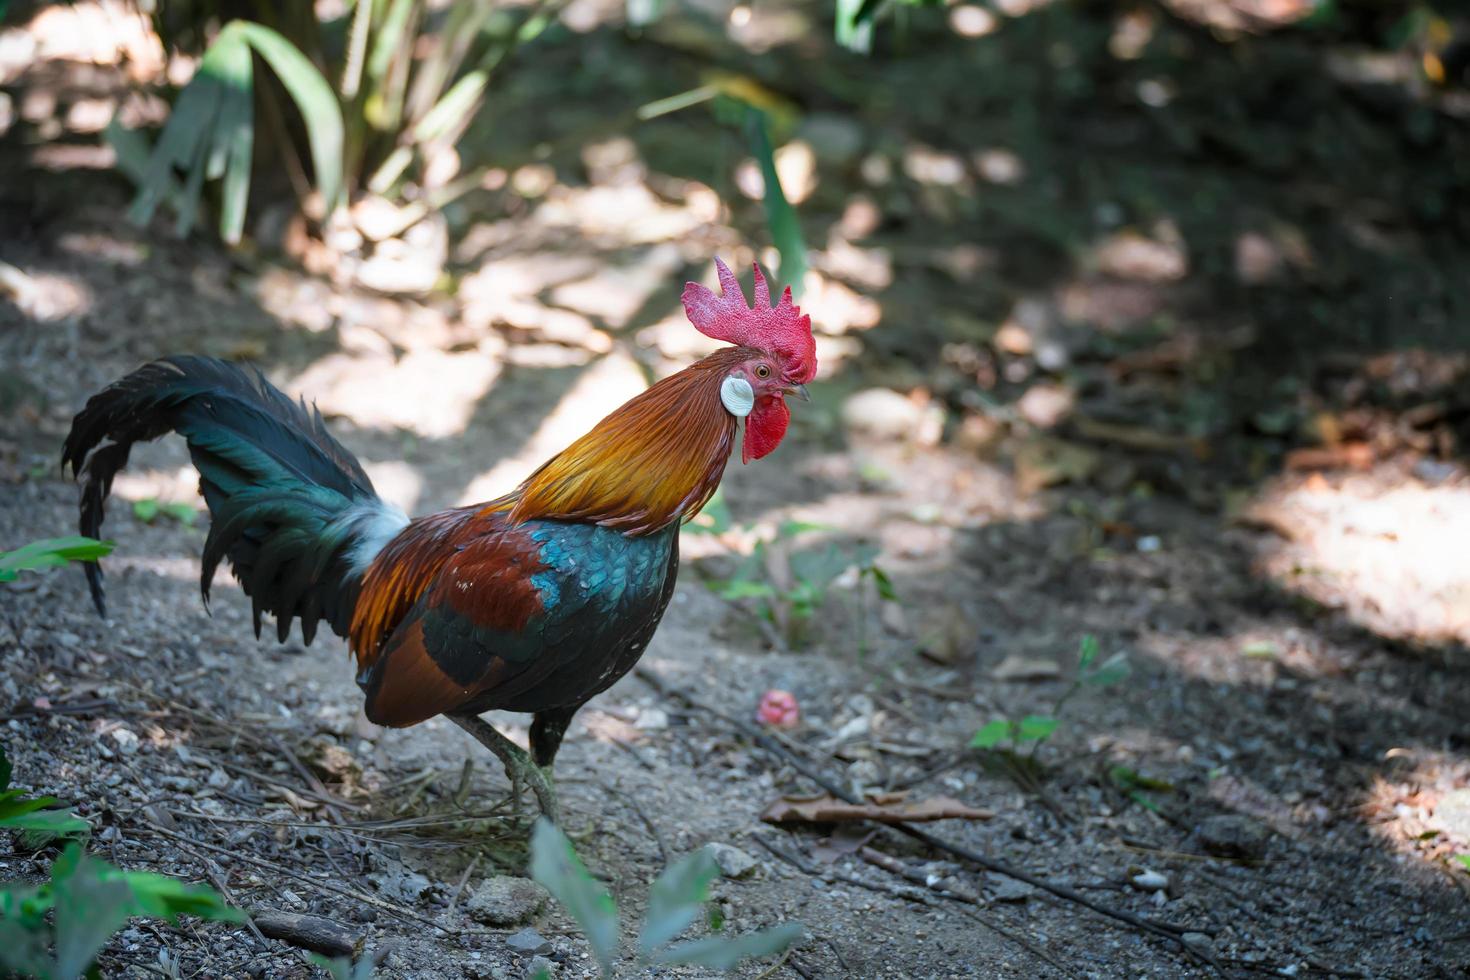 galo bantam, lindo frango bantam tailandês em fram. conceito de conservação animal e proteção de ecossistemas. foto